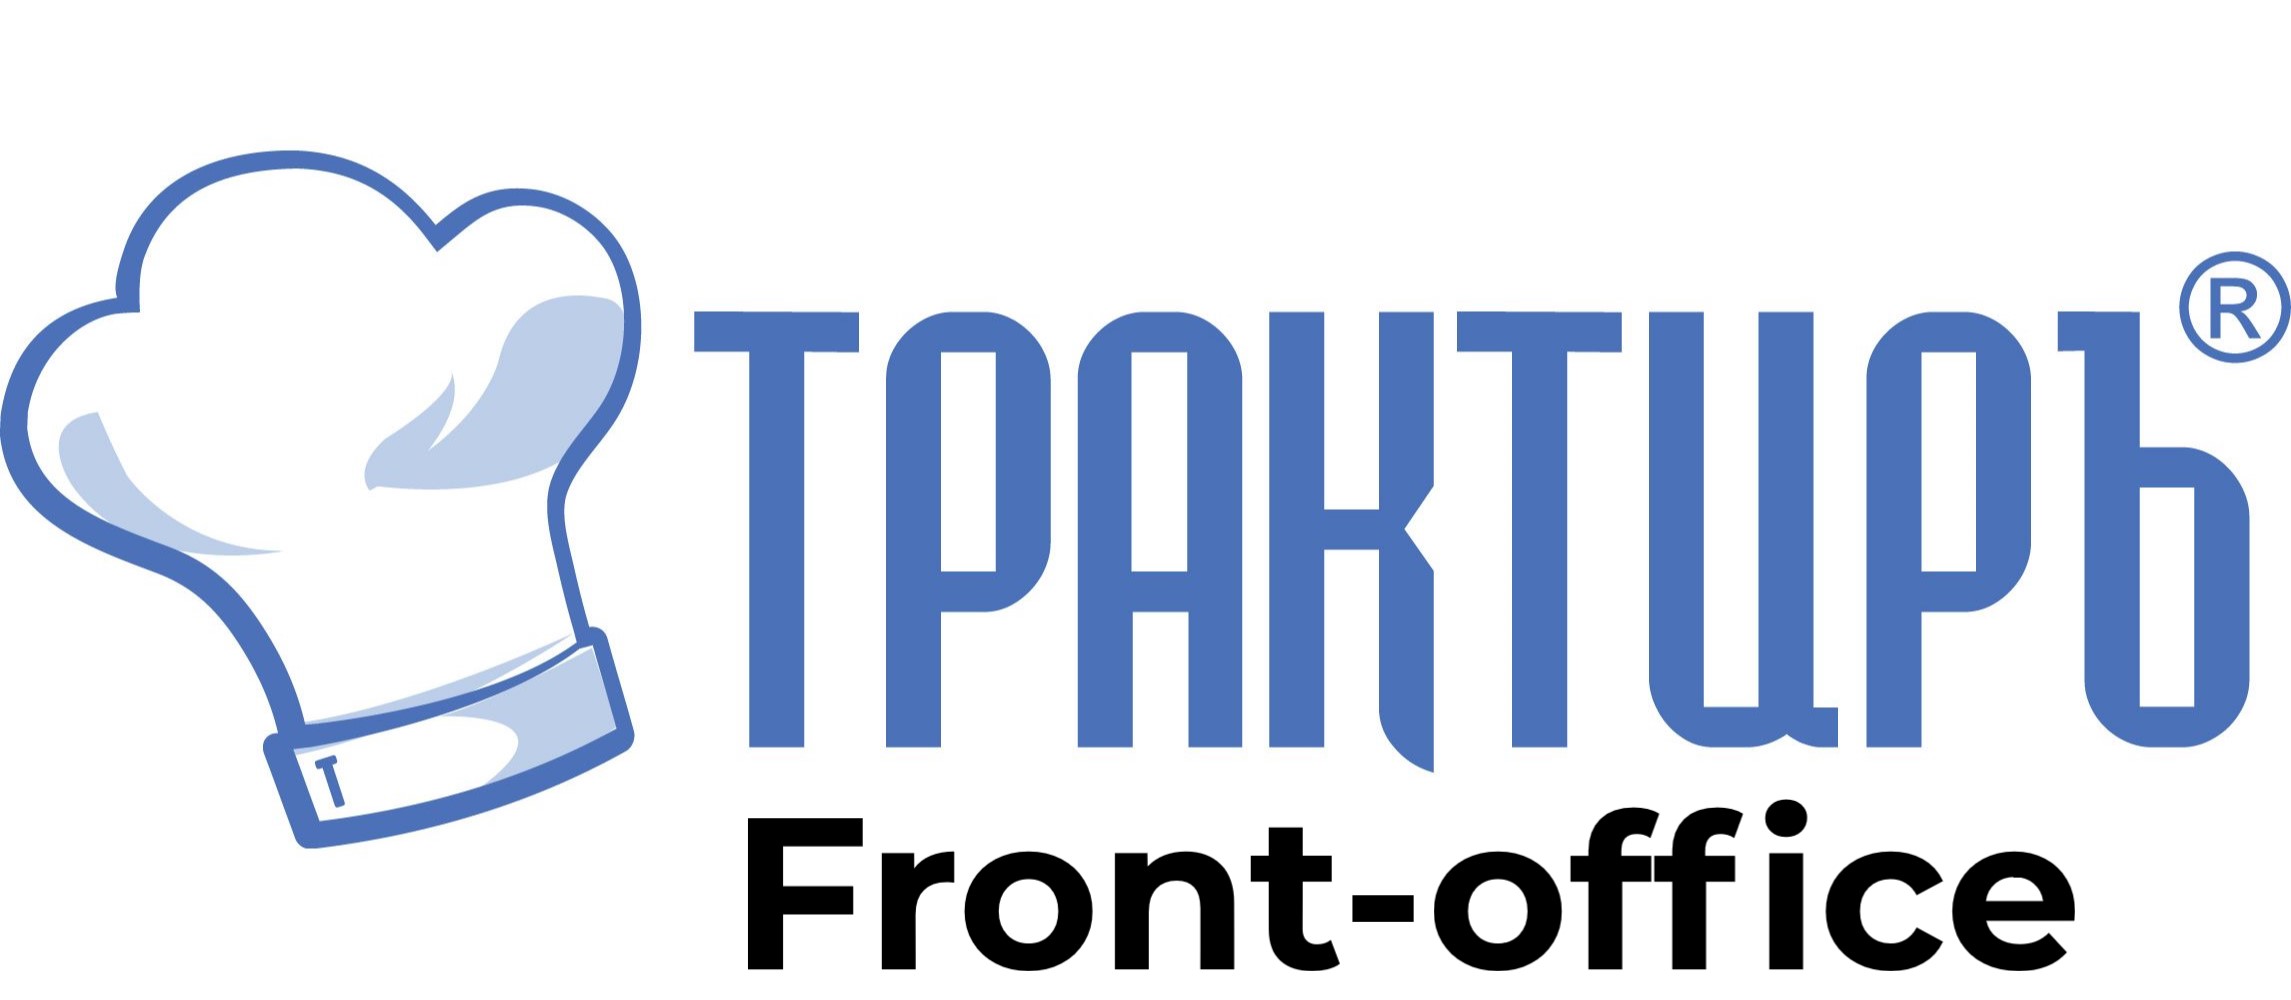 Трактиръ: Front-Office v4.5  Основная поставка в Смоленске